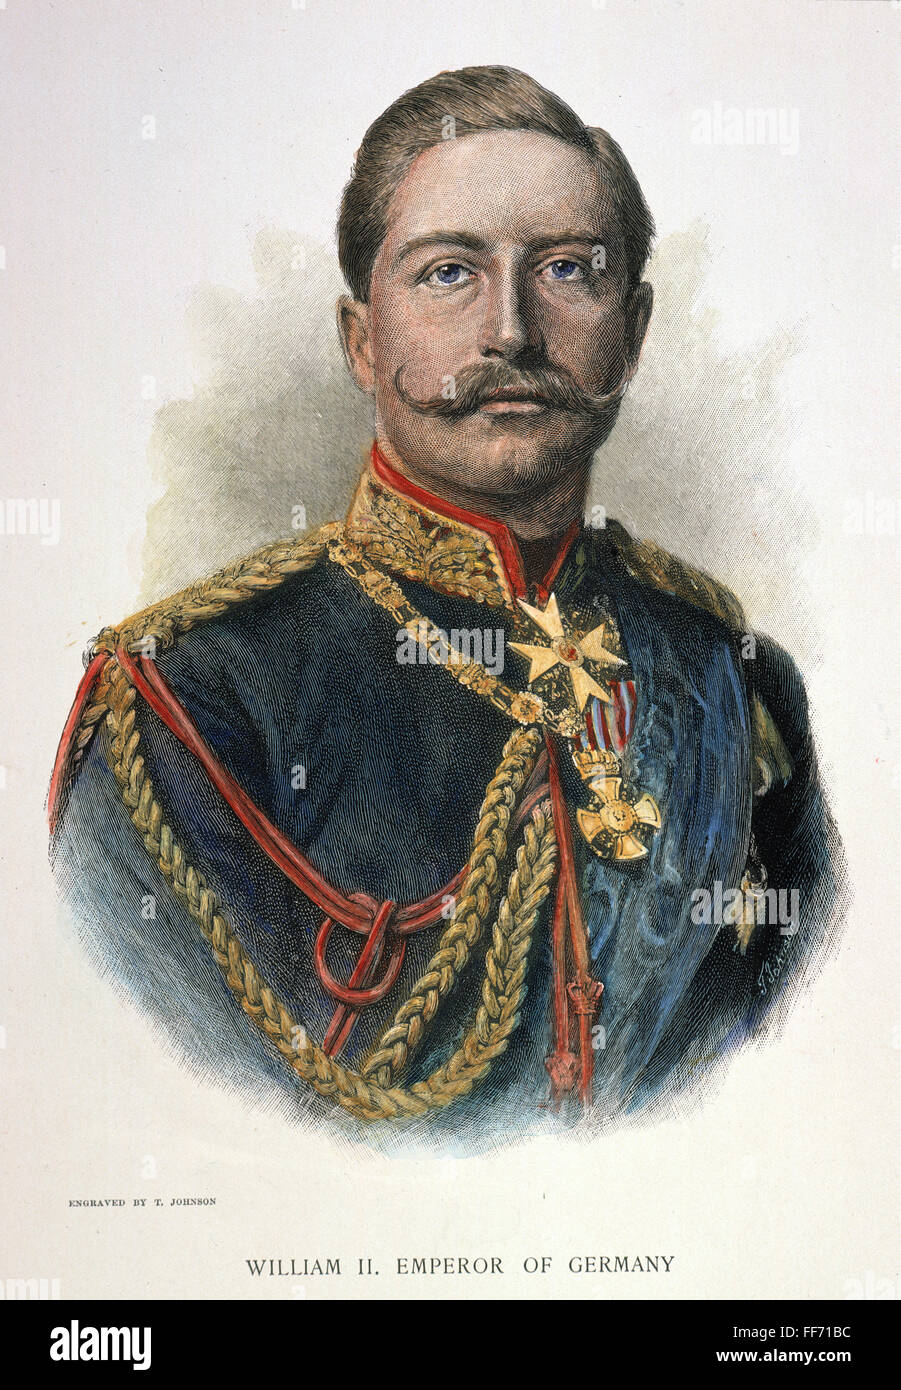 L'imperatore Guglielmo II /nof Germania (1859-1941). Incisione su legno, c1890, da Thomas Johnson dopo una fotografia. Foto Stock